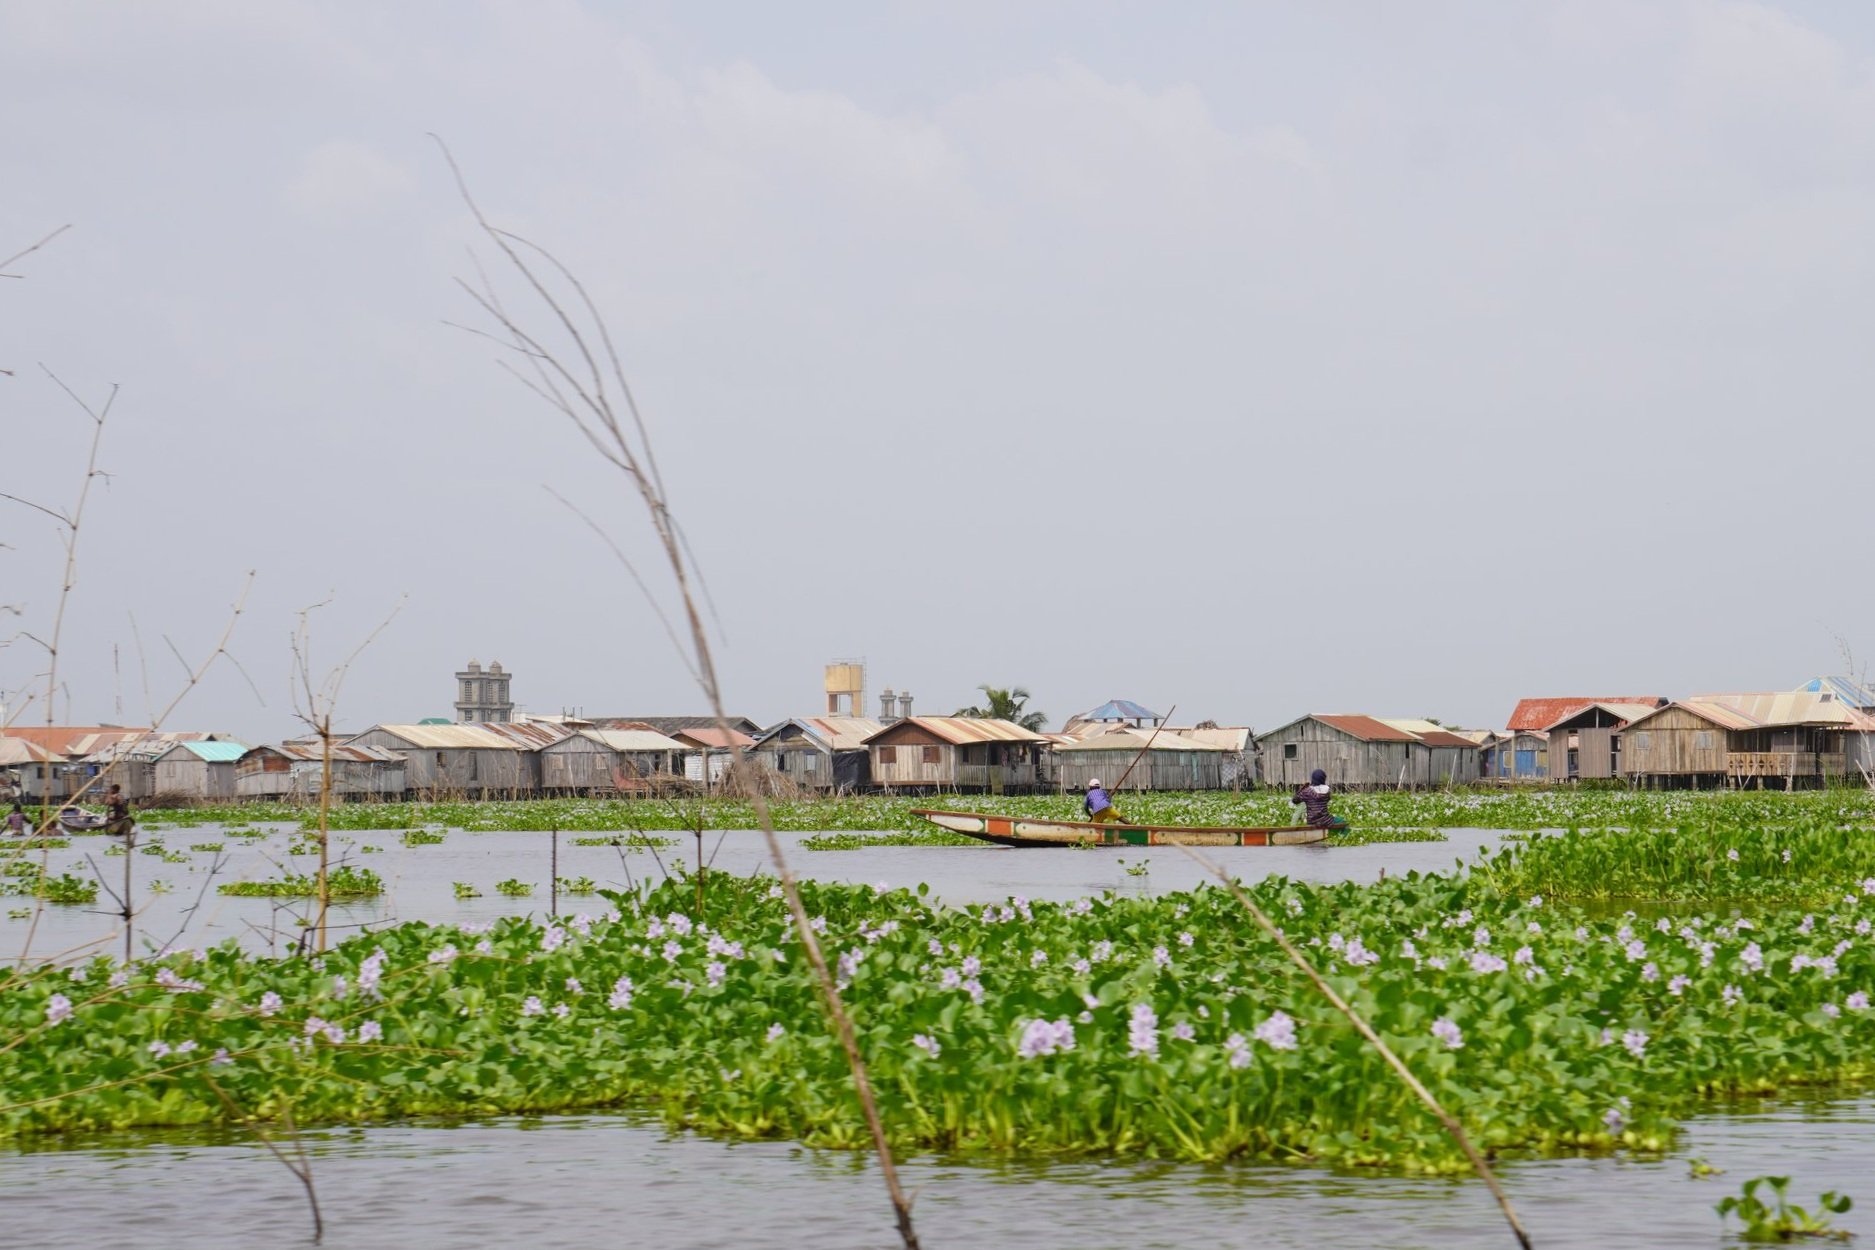  La commune de So-Âva, au Nord de Cotonou, s’étend sur plus de 215 km2, avec des bois et des cultures maraîchères dans le Nord. Mais dans le Sud, les maisons sont bâties sur pilotis sur le Lac Nokoue.  